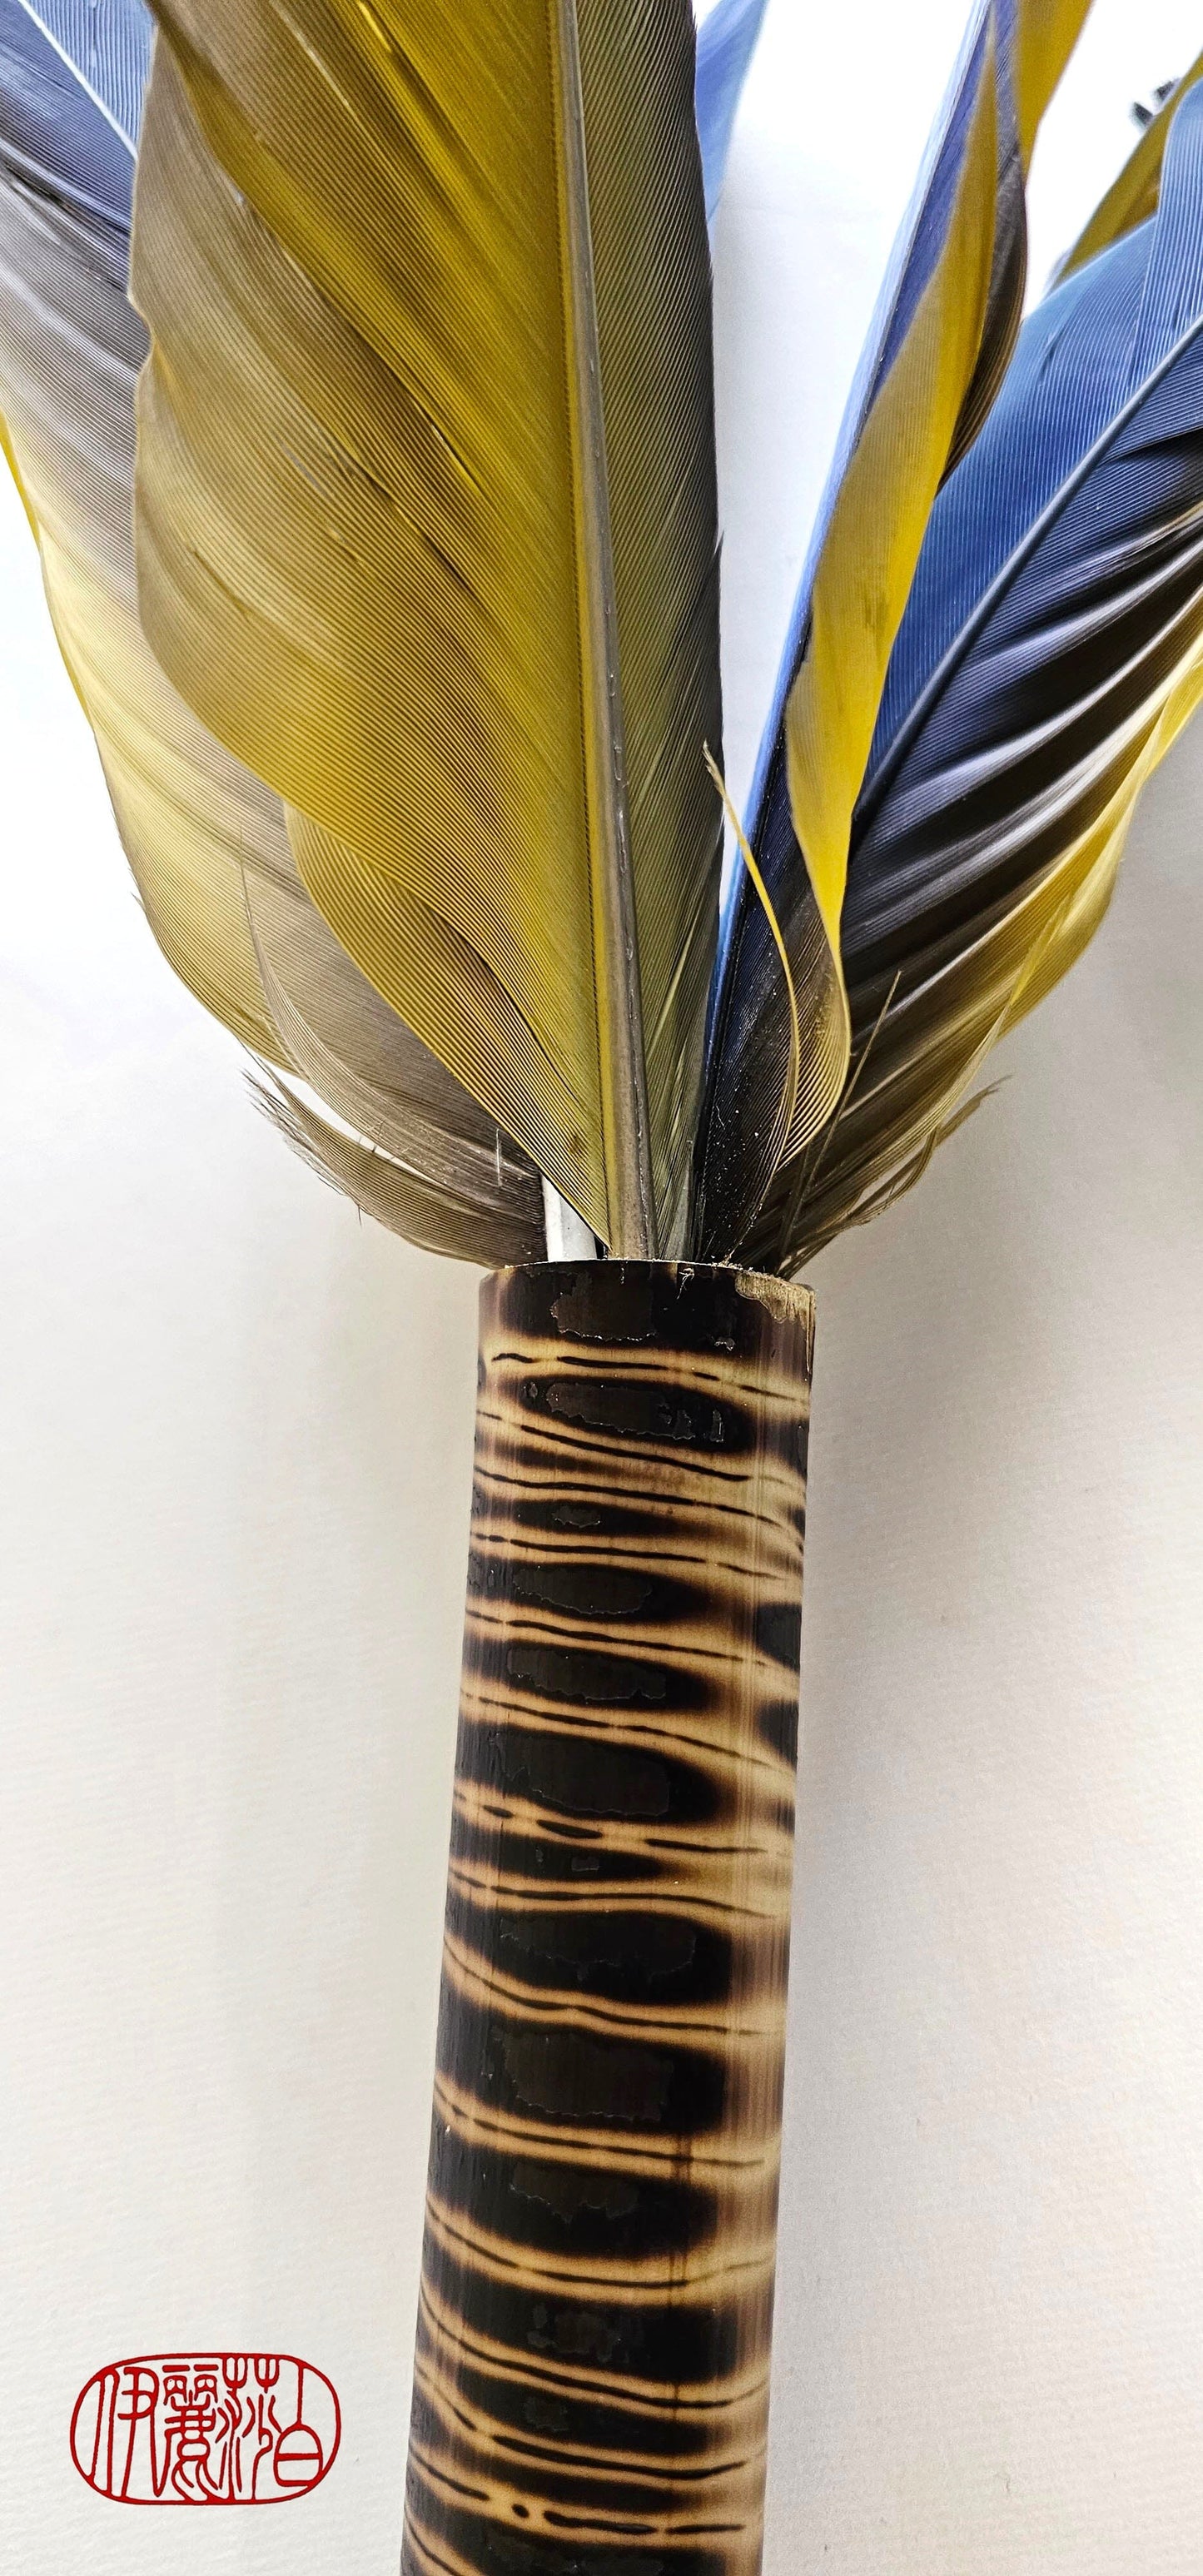 Handcrafted Parrot Feather Sumi-e Paintbrush Art Supplies Elizabeth Schowachert Art